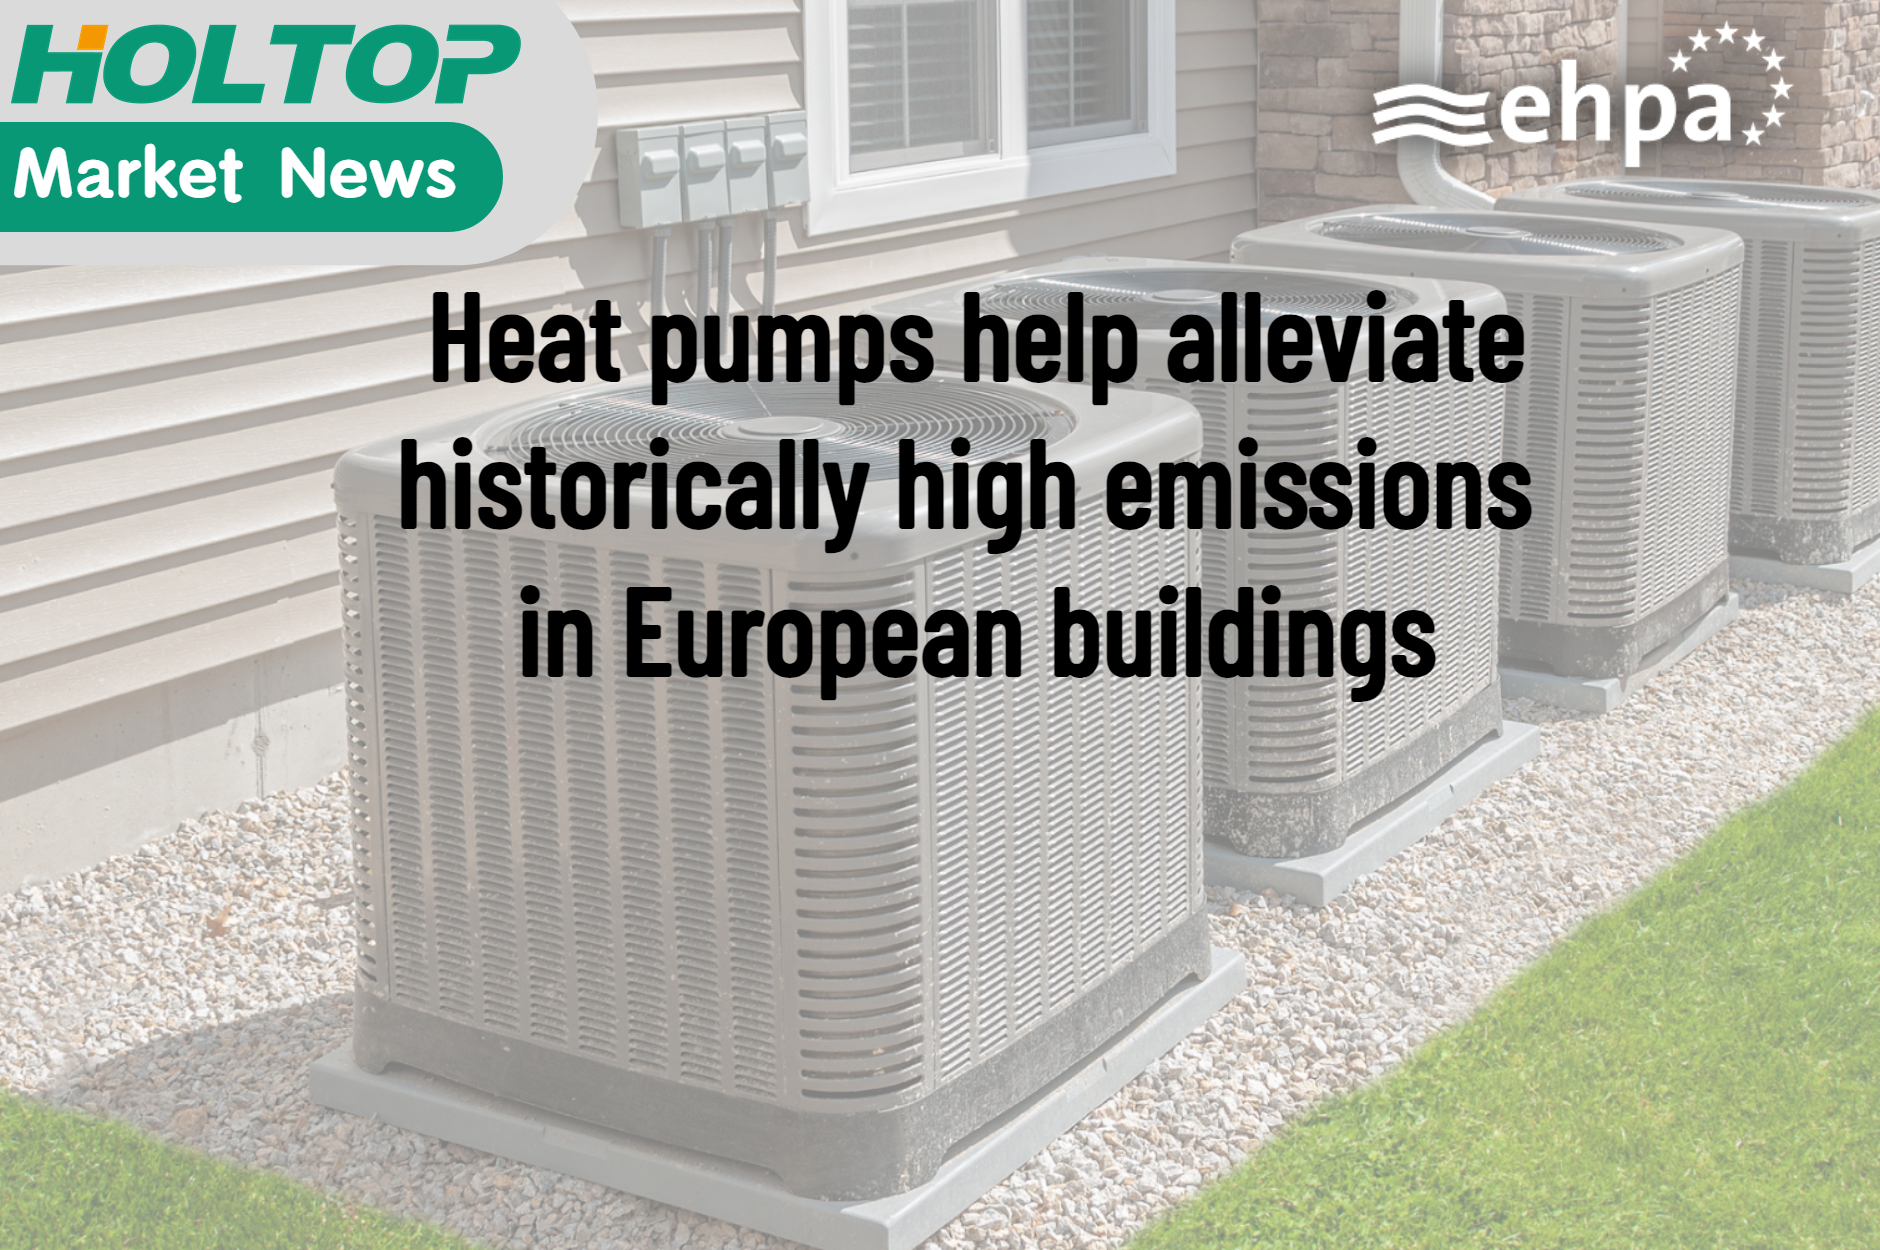 تساعد المضخات الحرارية في التخفيف من الانبعاثات المرتفعة تاريخياً في المباني الأوروبية